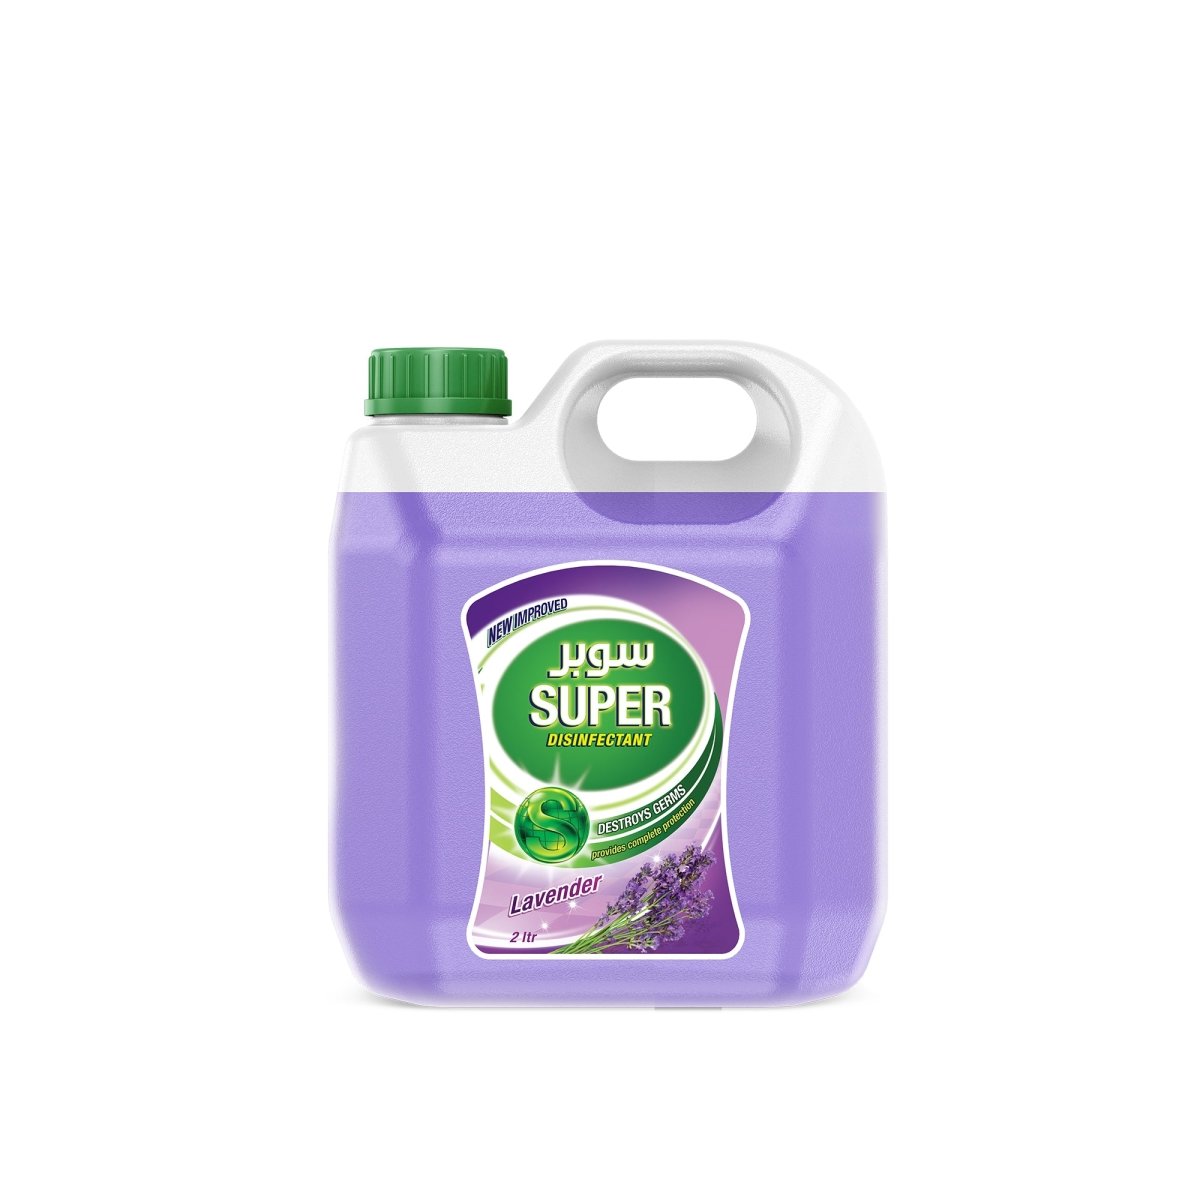 Super Disinfectant - Tulsidas